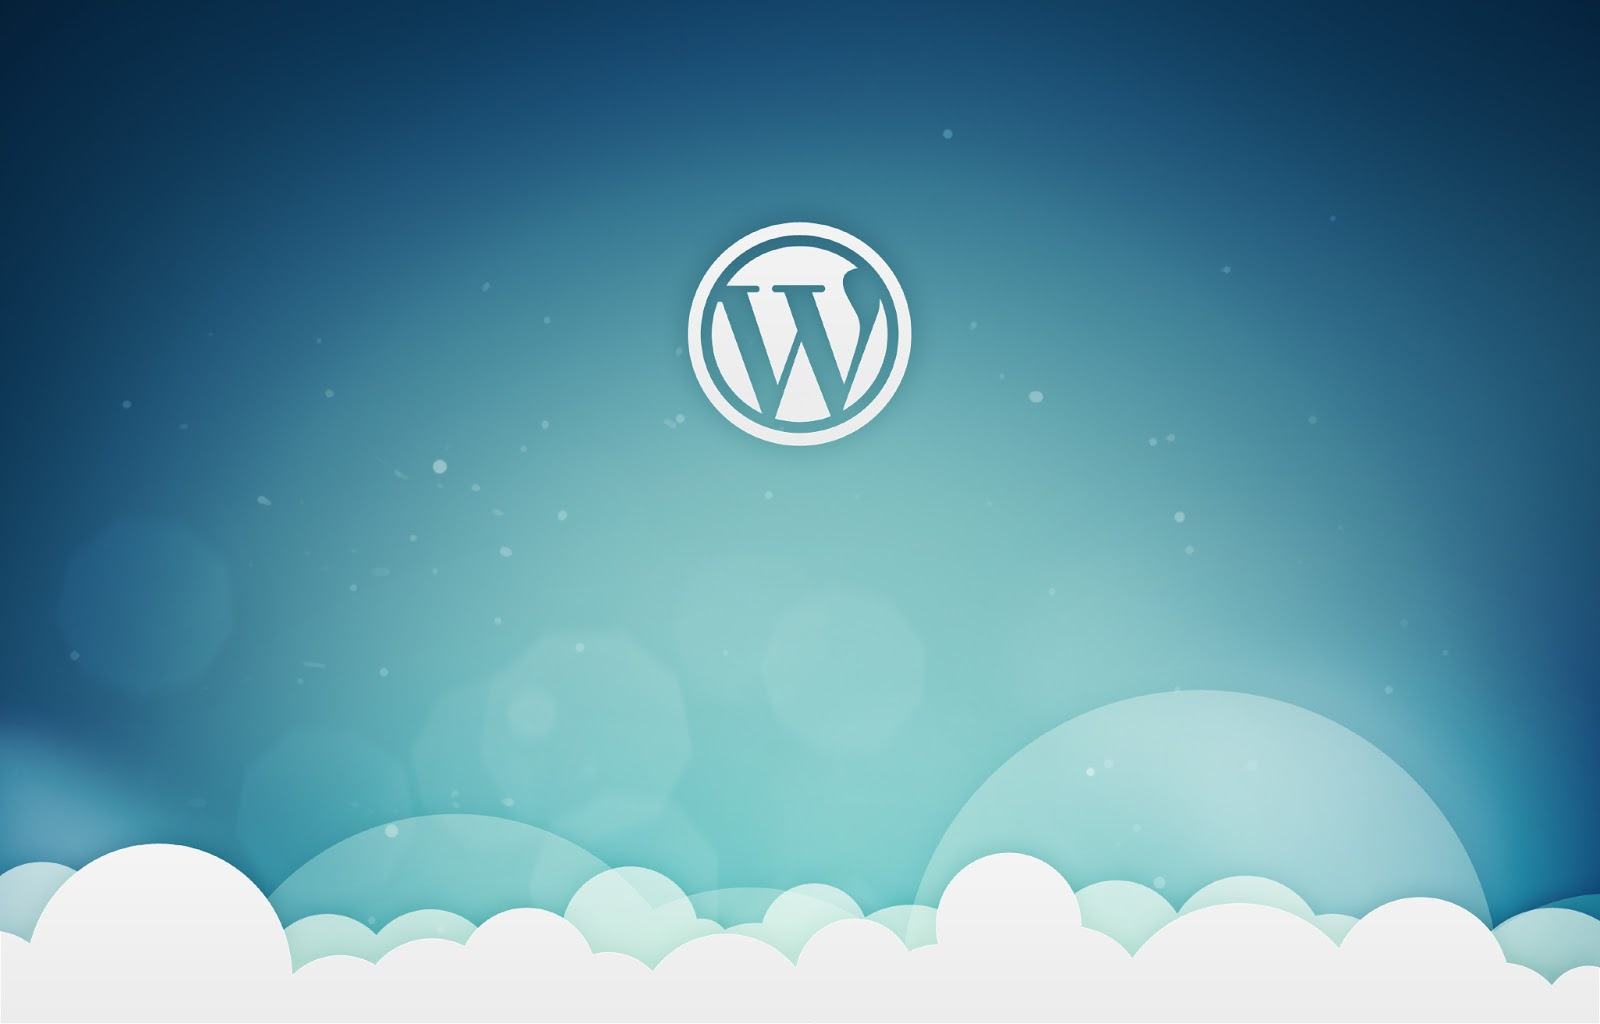 Creare pagine con WordPress app la guida per principianti 14